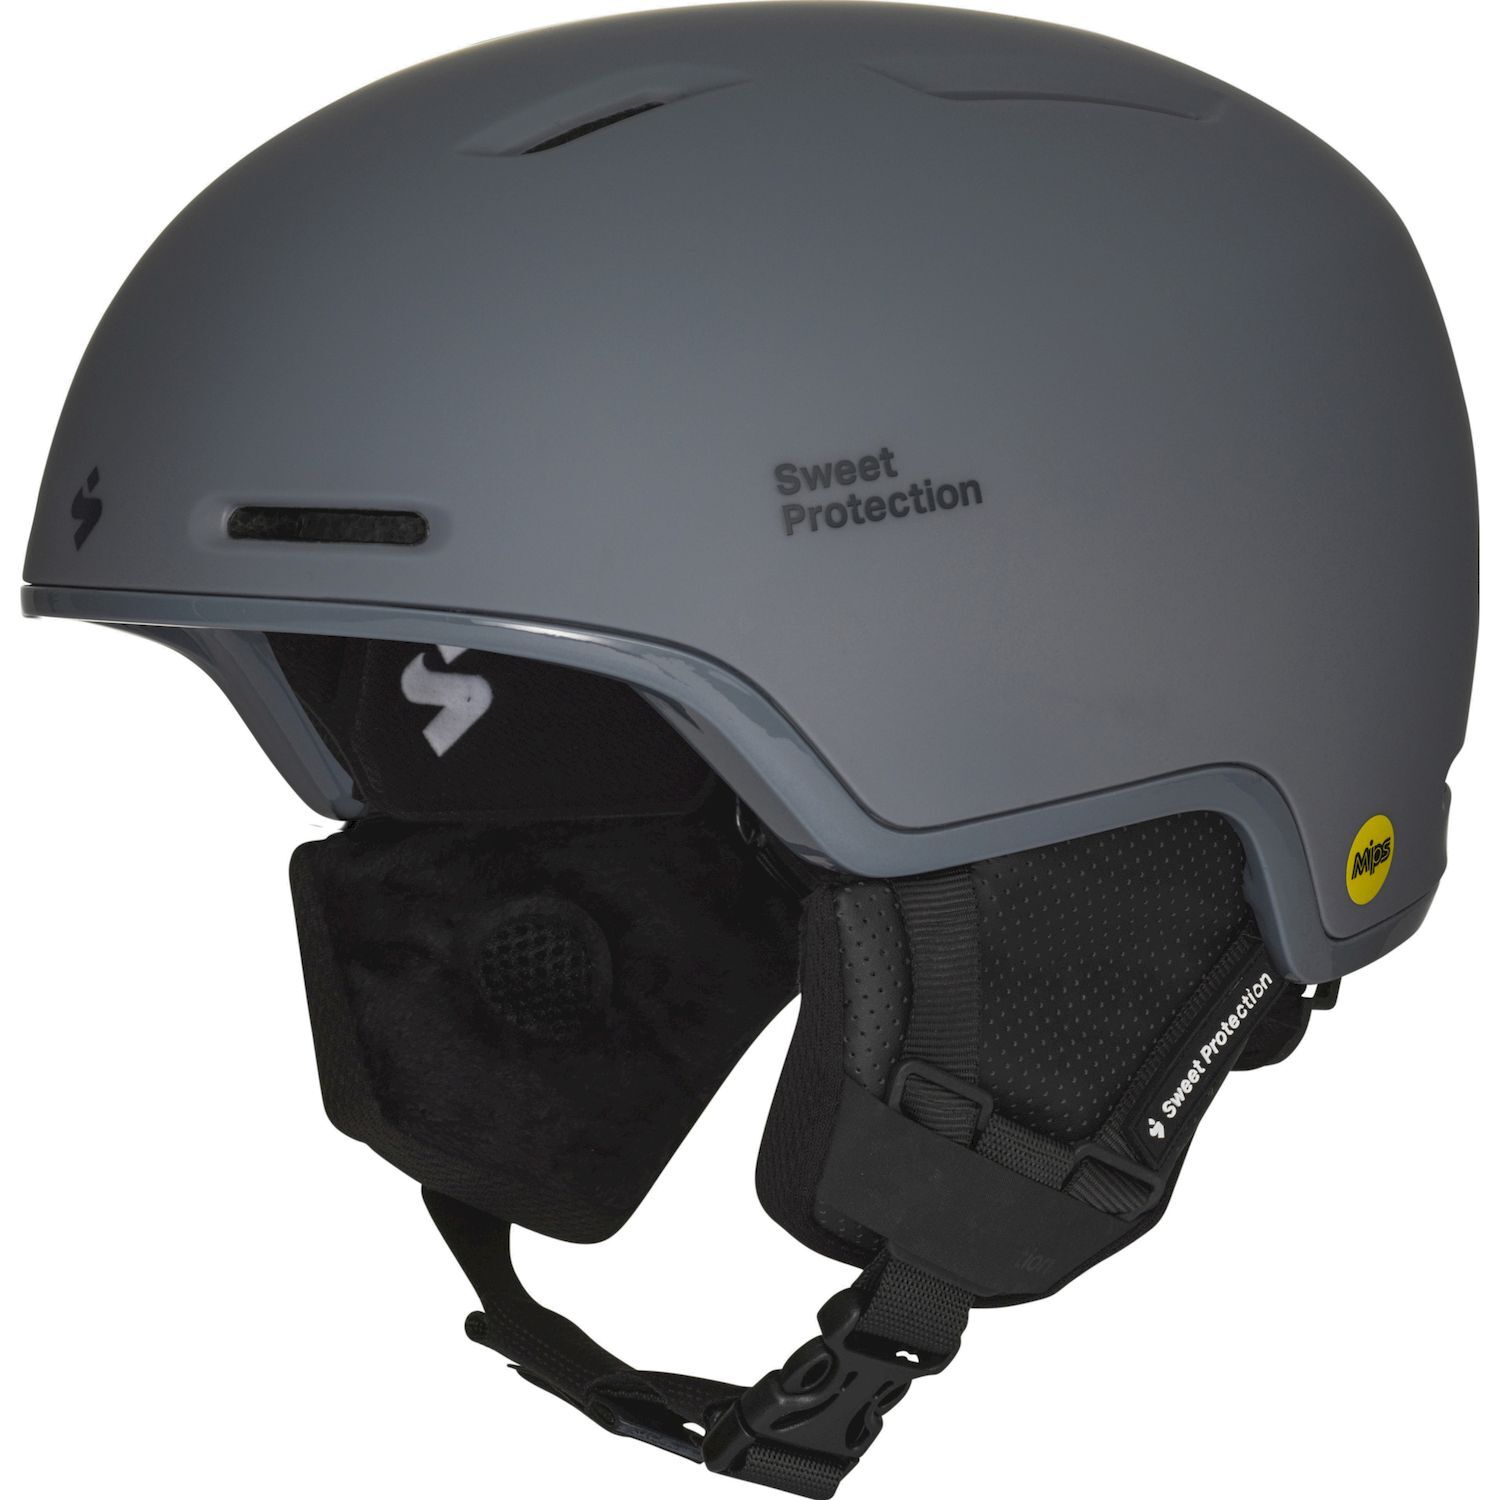 Sweet Protection Looper MIPS - Ski helmet - Men's